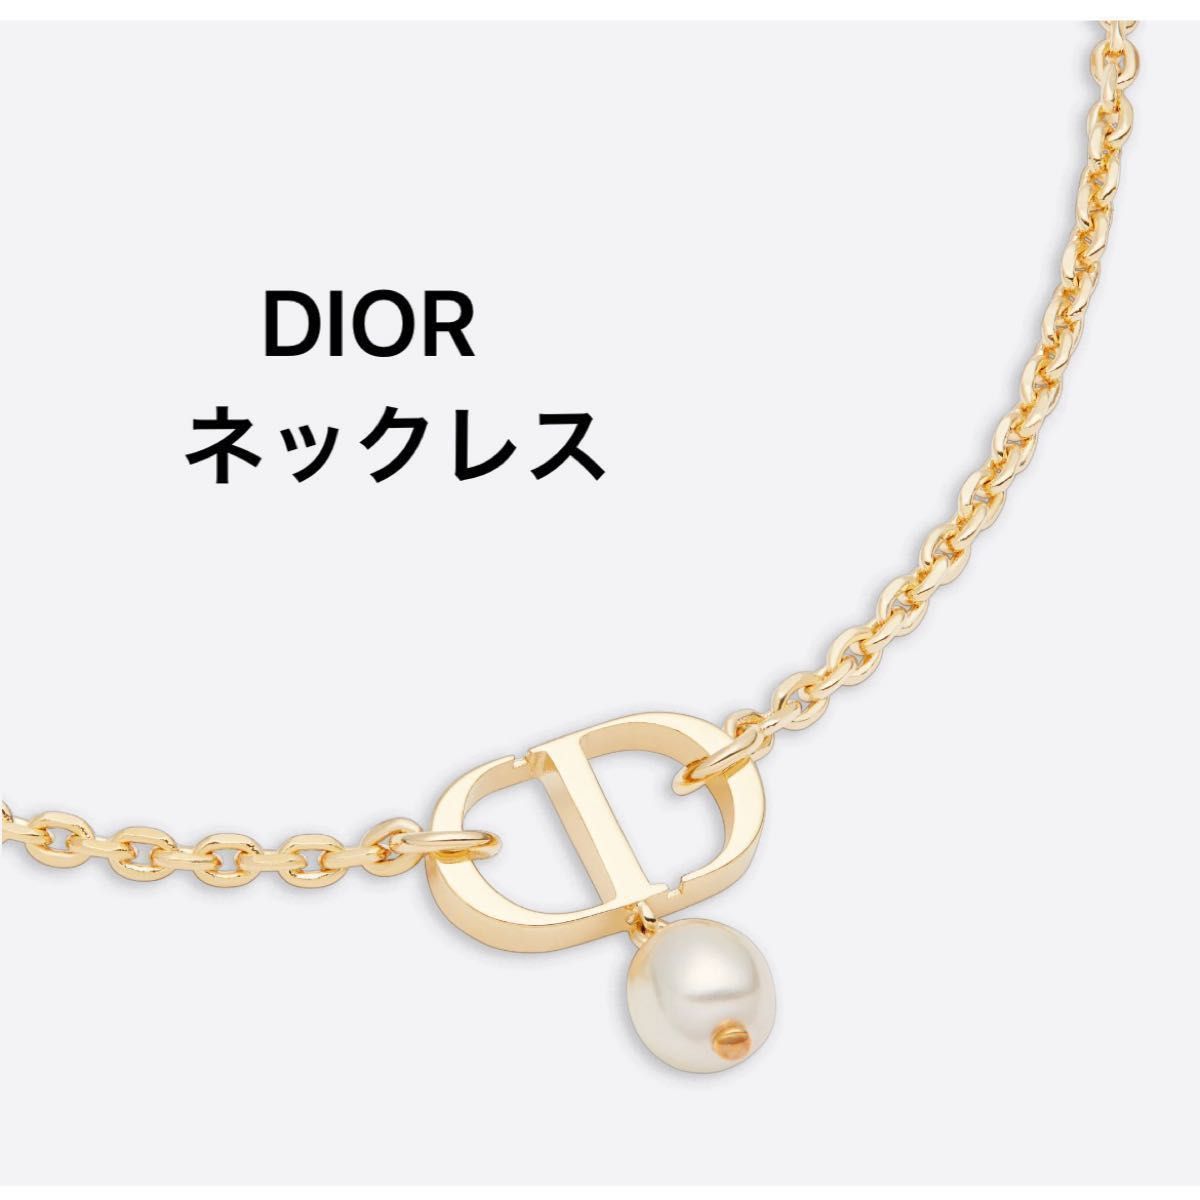 人気が高 Dior - Dior PETIT CD ネックレスの通販 by Sidler's shop